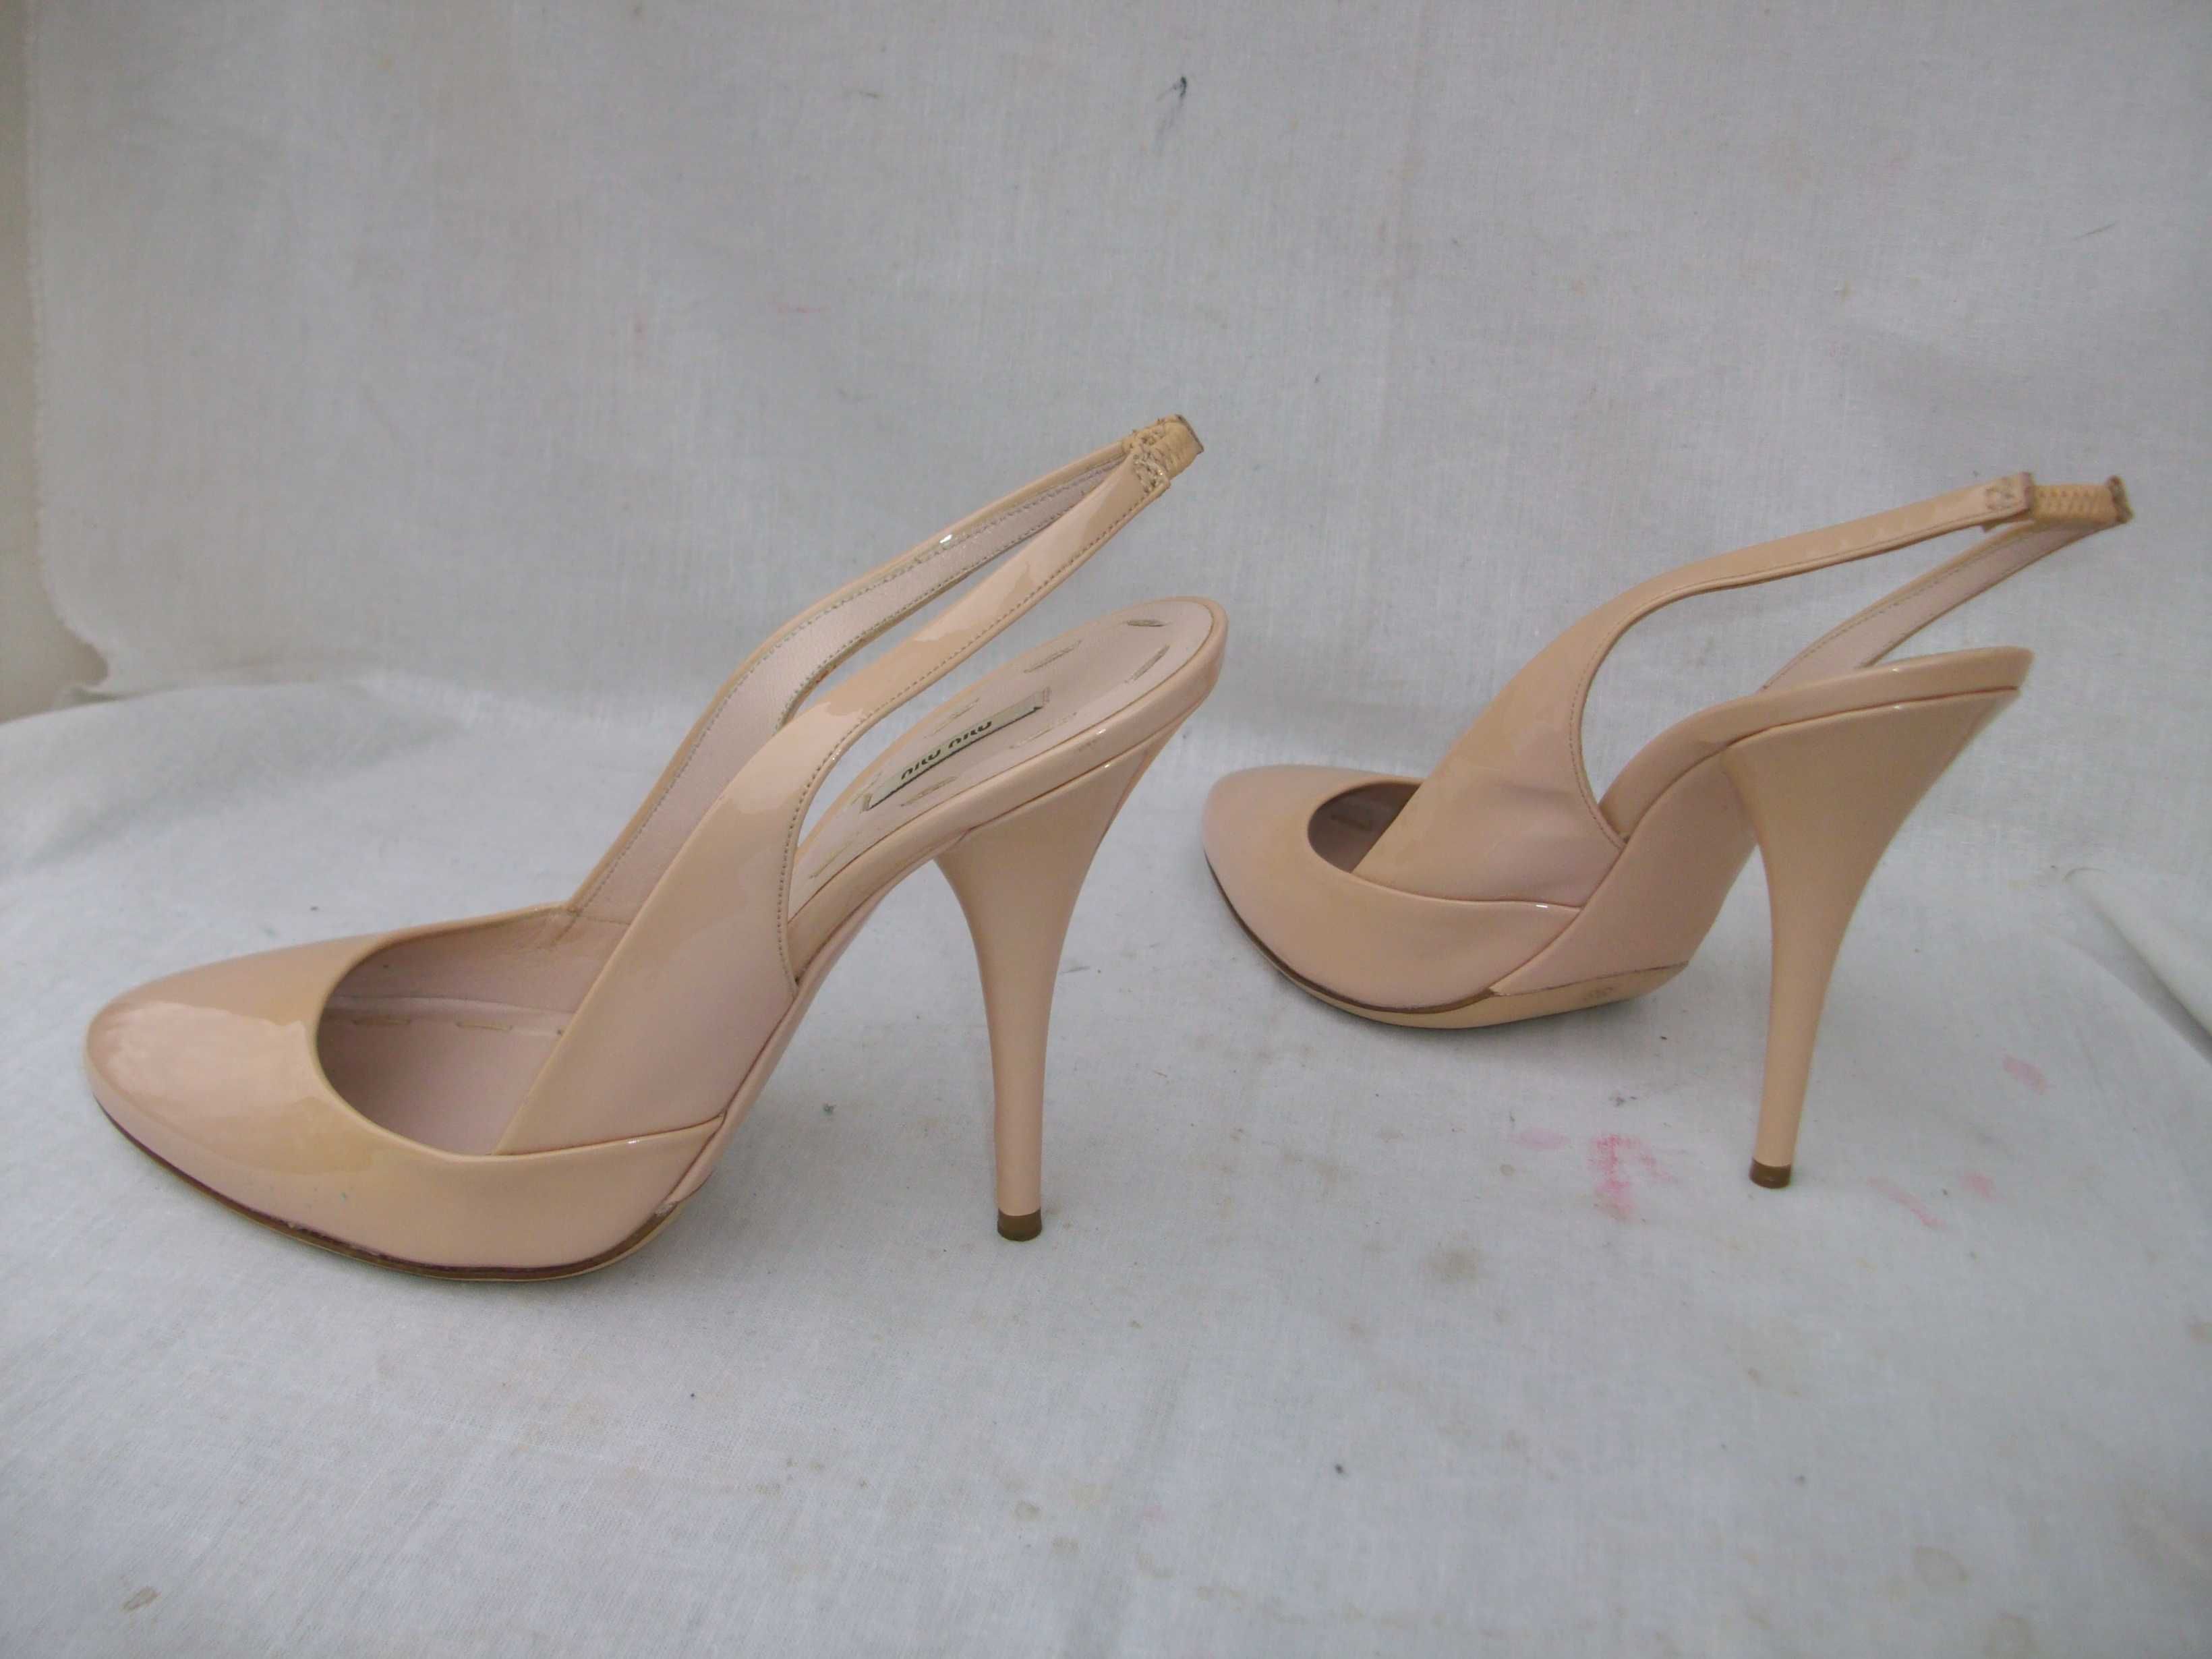 Miu Miu- Prada skórzane beżowe lakierki sandały szpilki 38